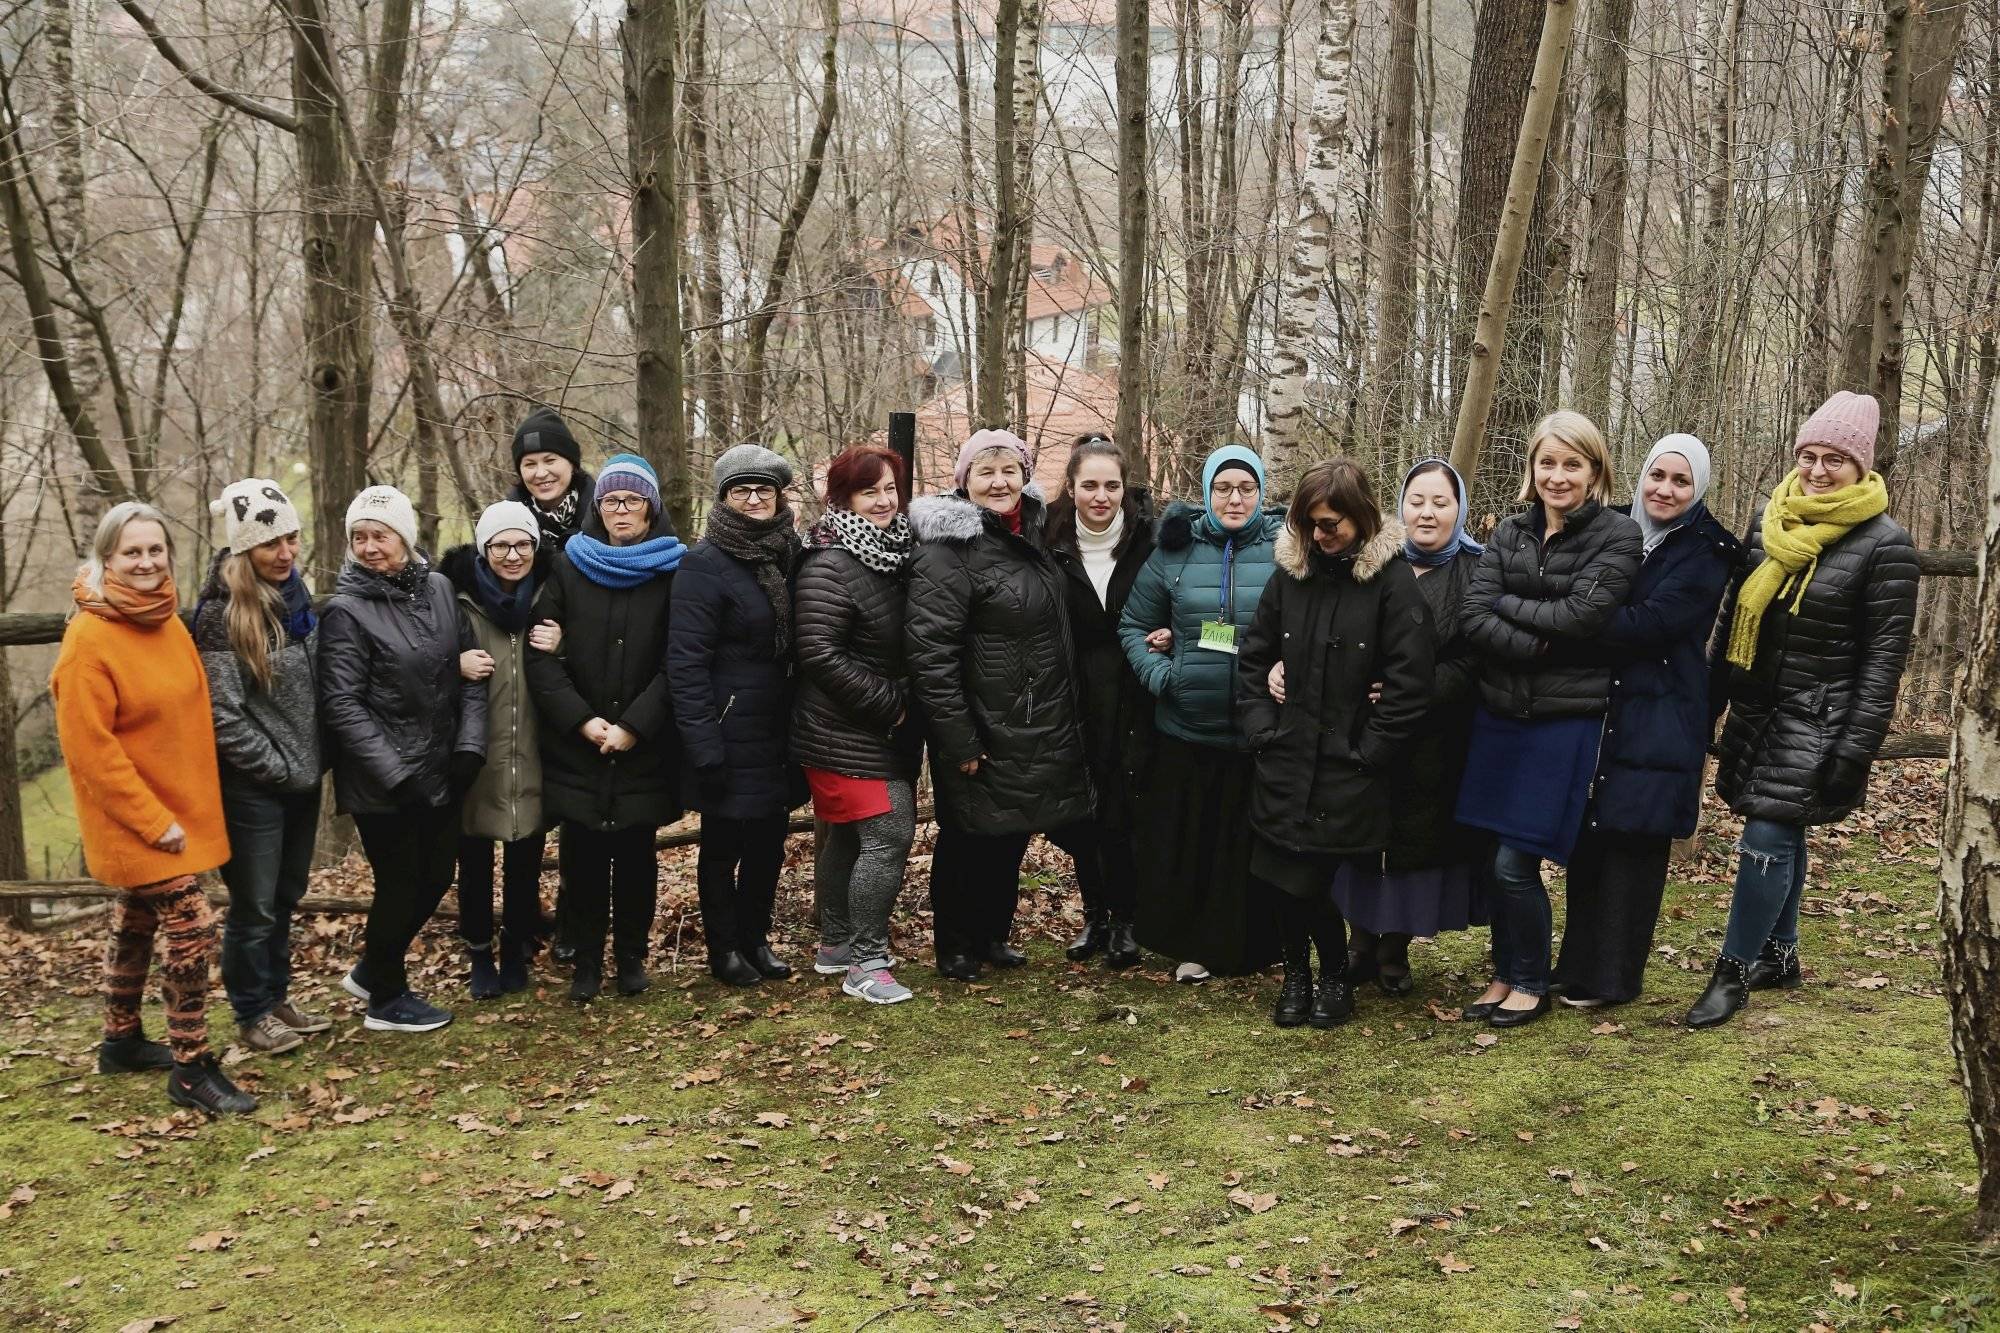 Grupa kobiet pozuje do zdjęcia na tle drzew